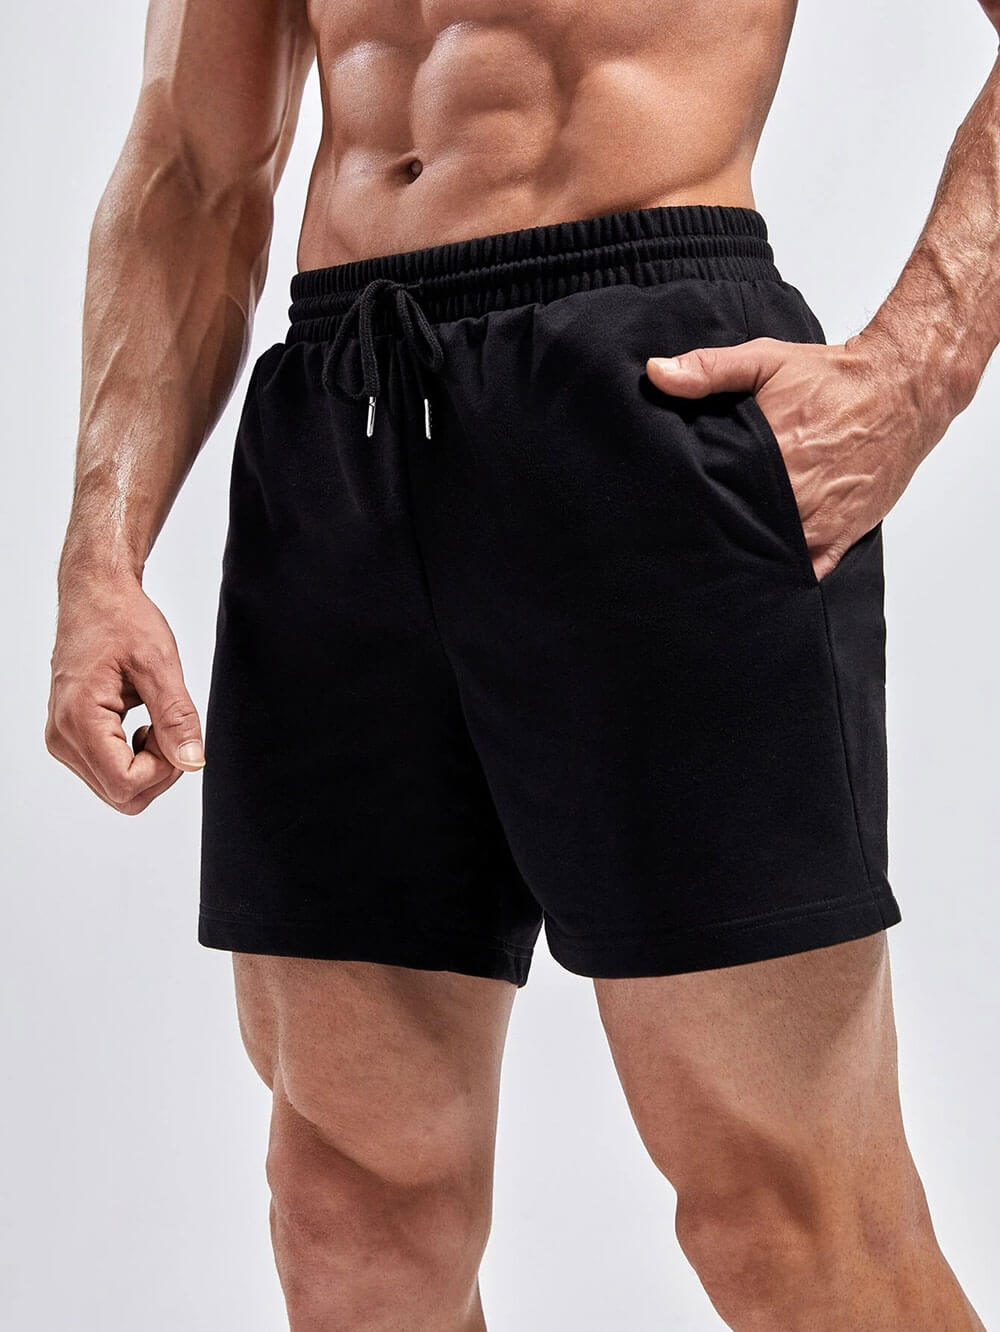 Mens training shorts – Loobek